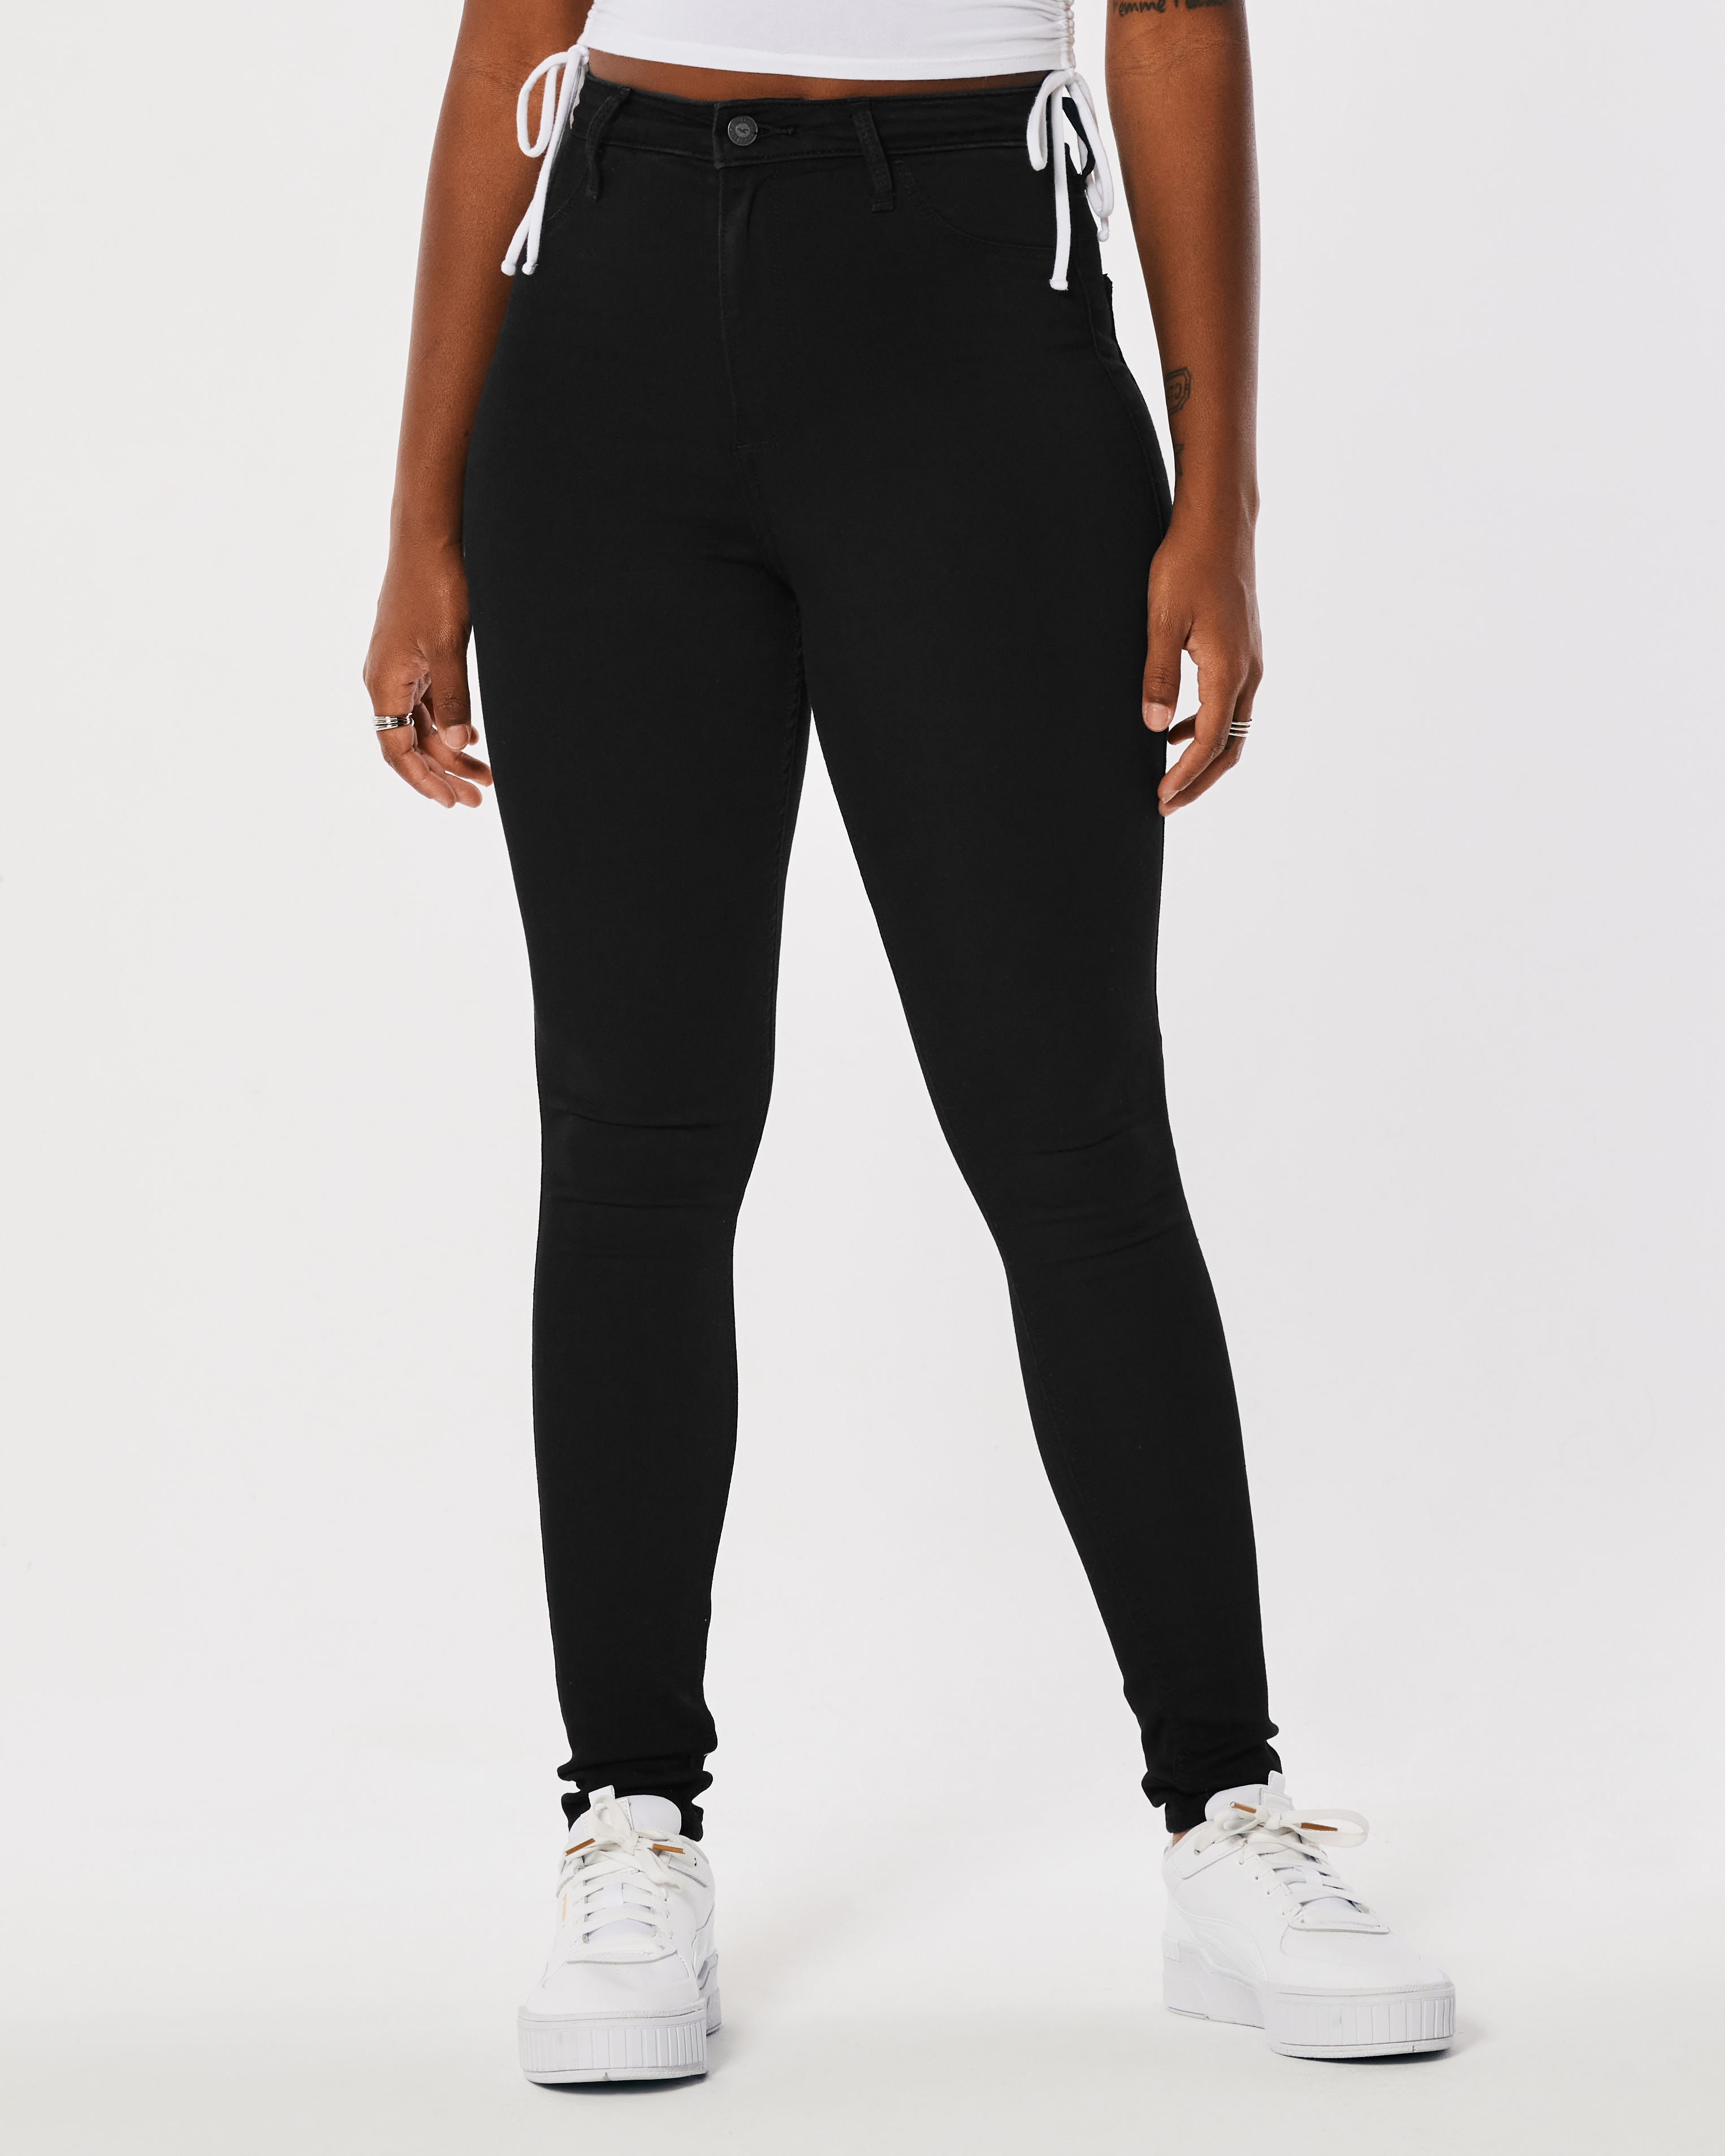 Women's Ultra High-Rise Black Jean Leggings - Hollister Co.